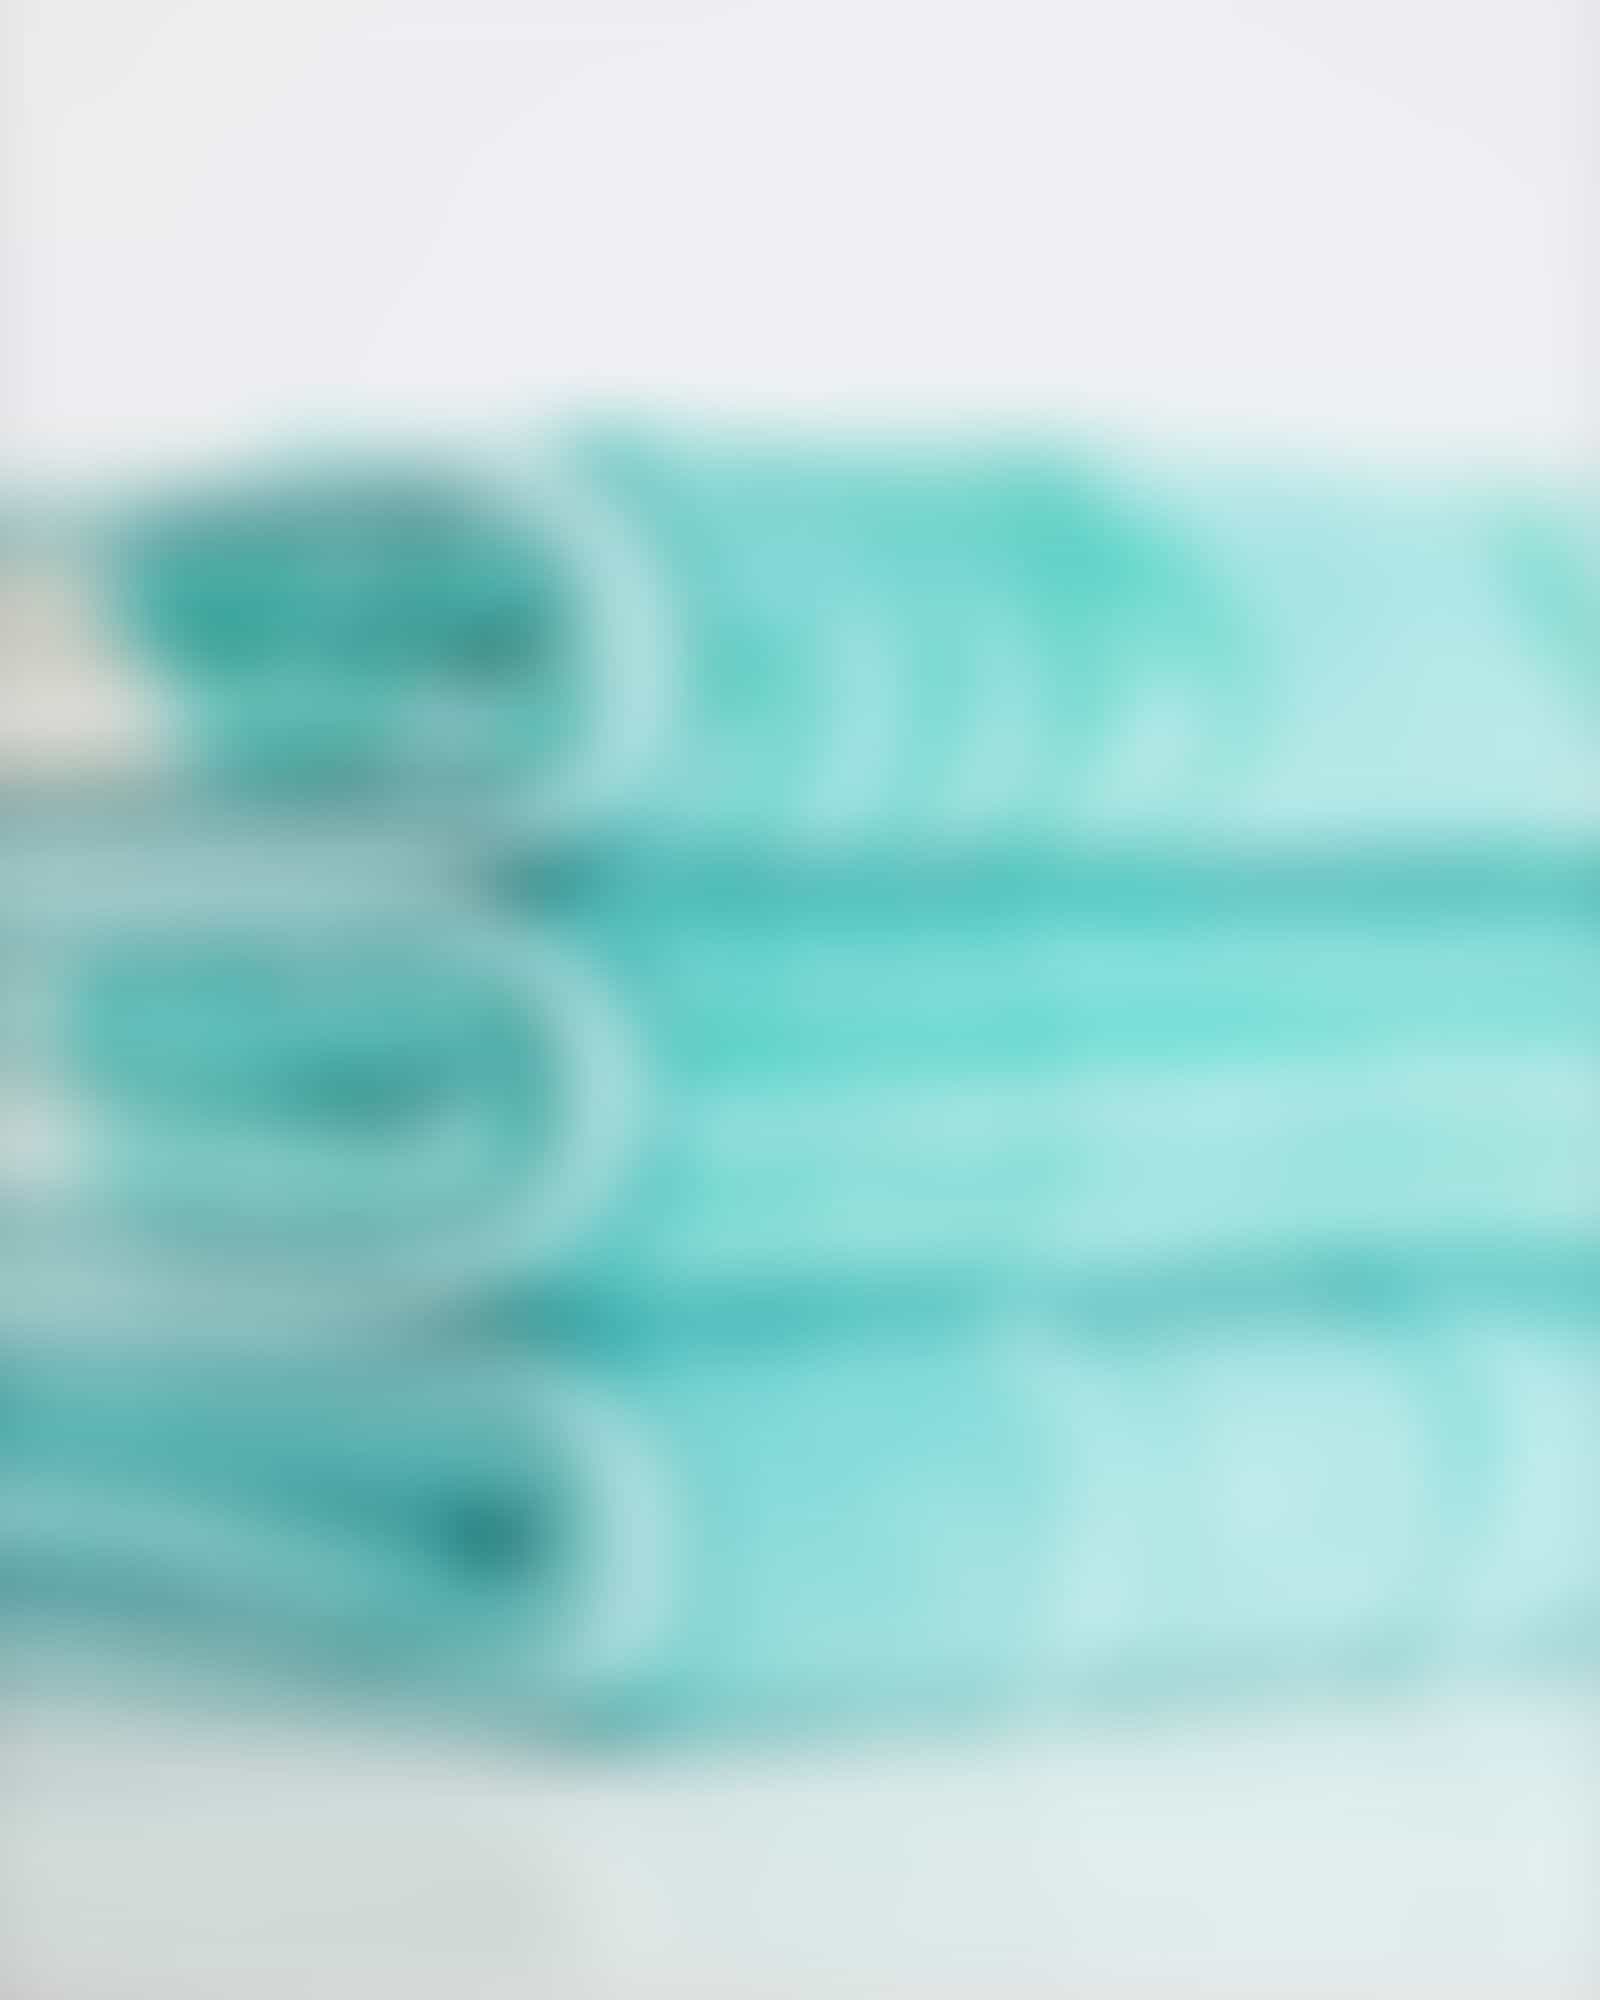 Cawö - Noblesse Cashmere Streifen 1056 - Farbe: mint - 14 - Gästetuch 30x50 cm